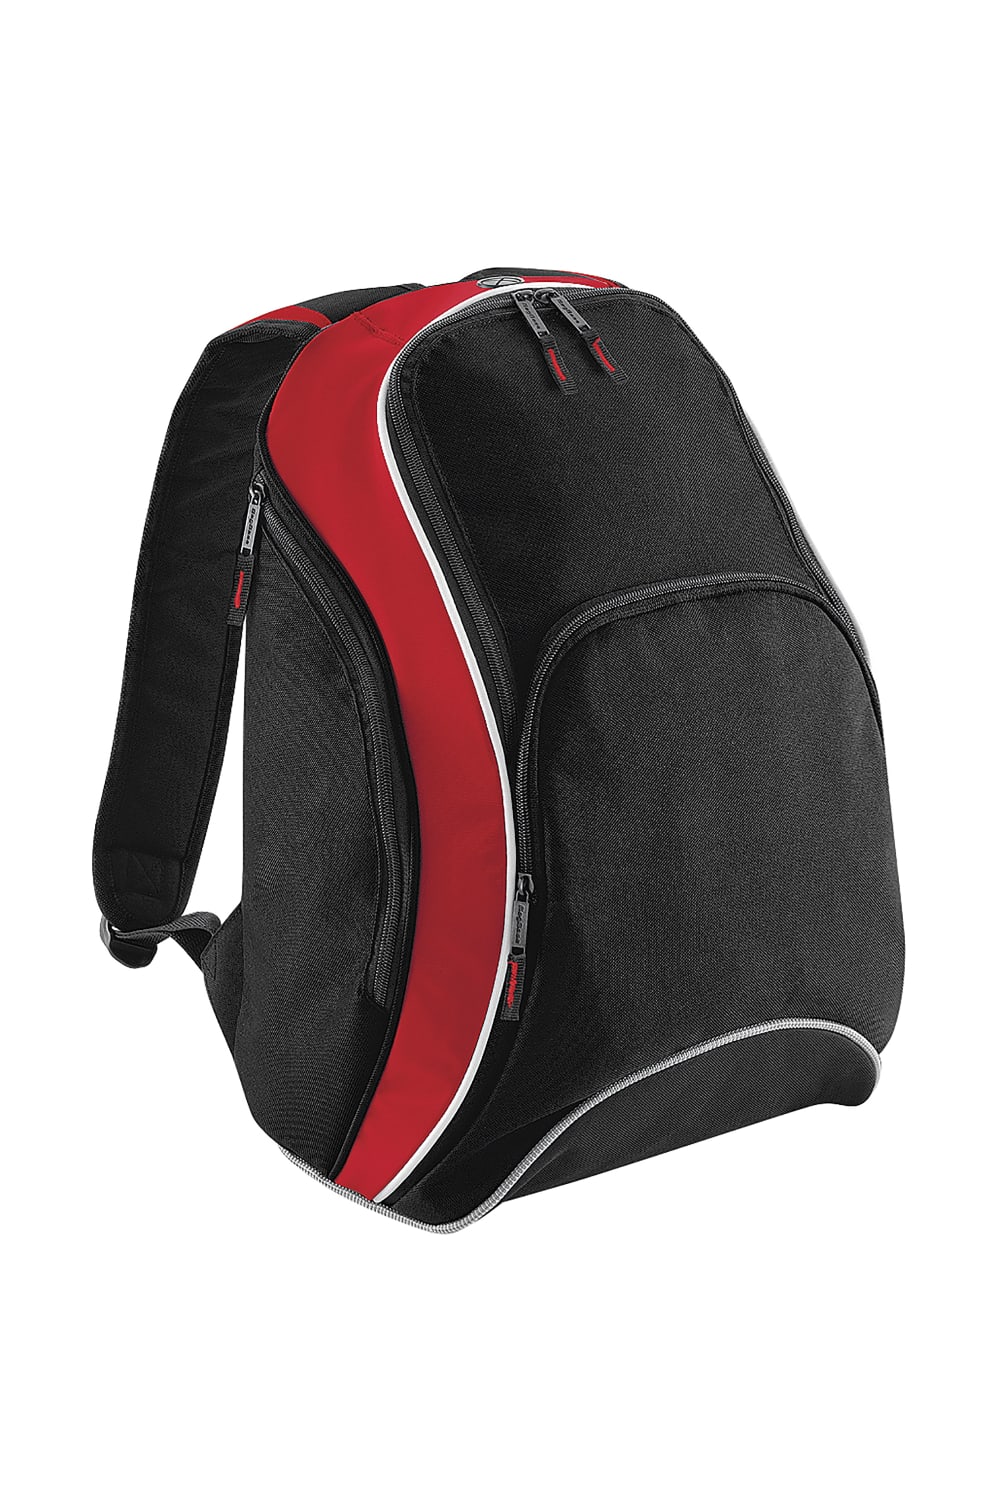 Teamwear Backpack / Rucksack (21 Liters) (Black/Classic Red/White)